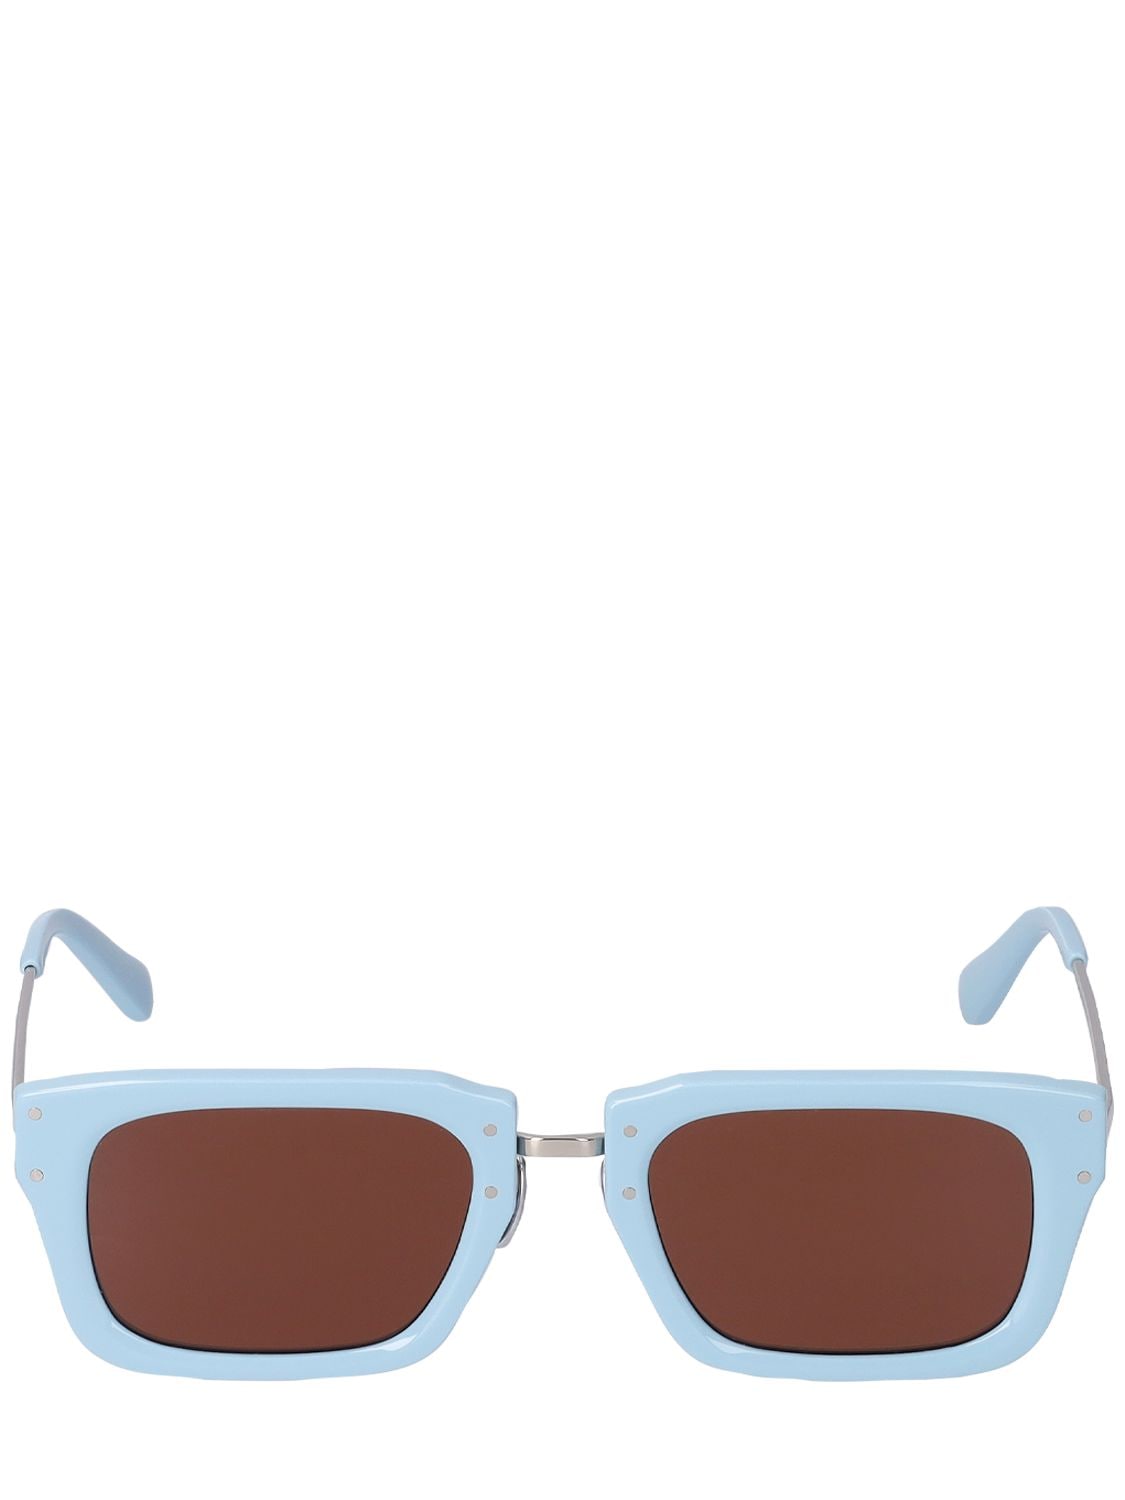 Shop Jacquemus Les Lunettes Soli Sunglasses In Blue,brown